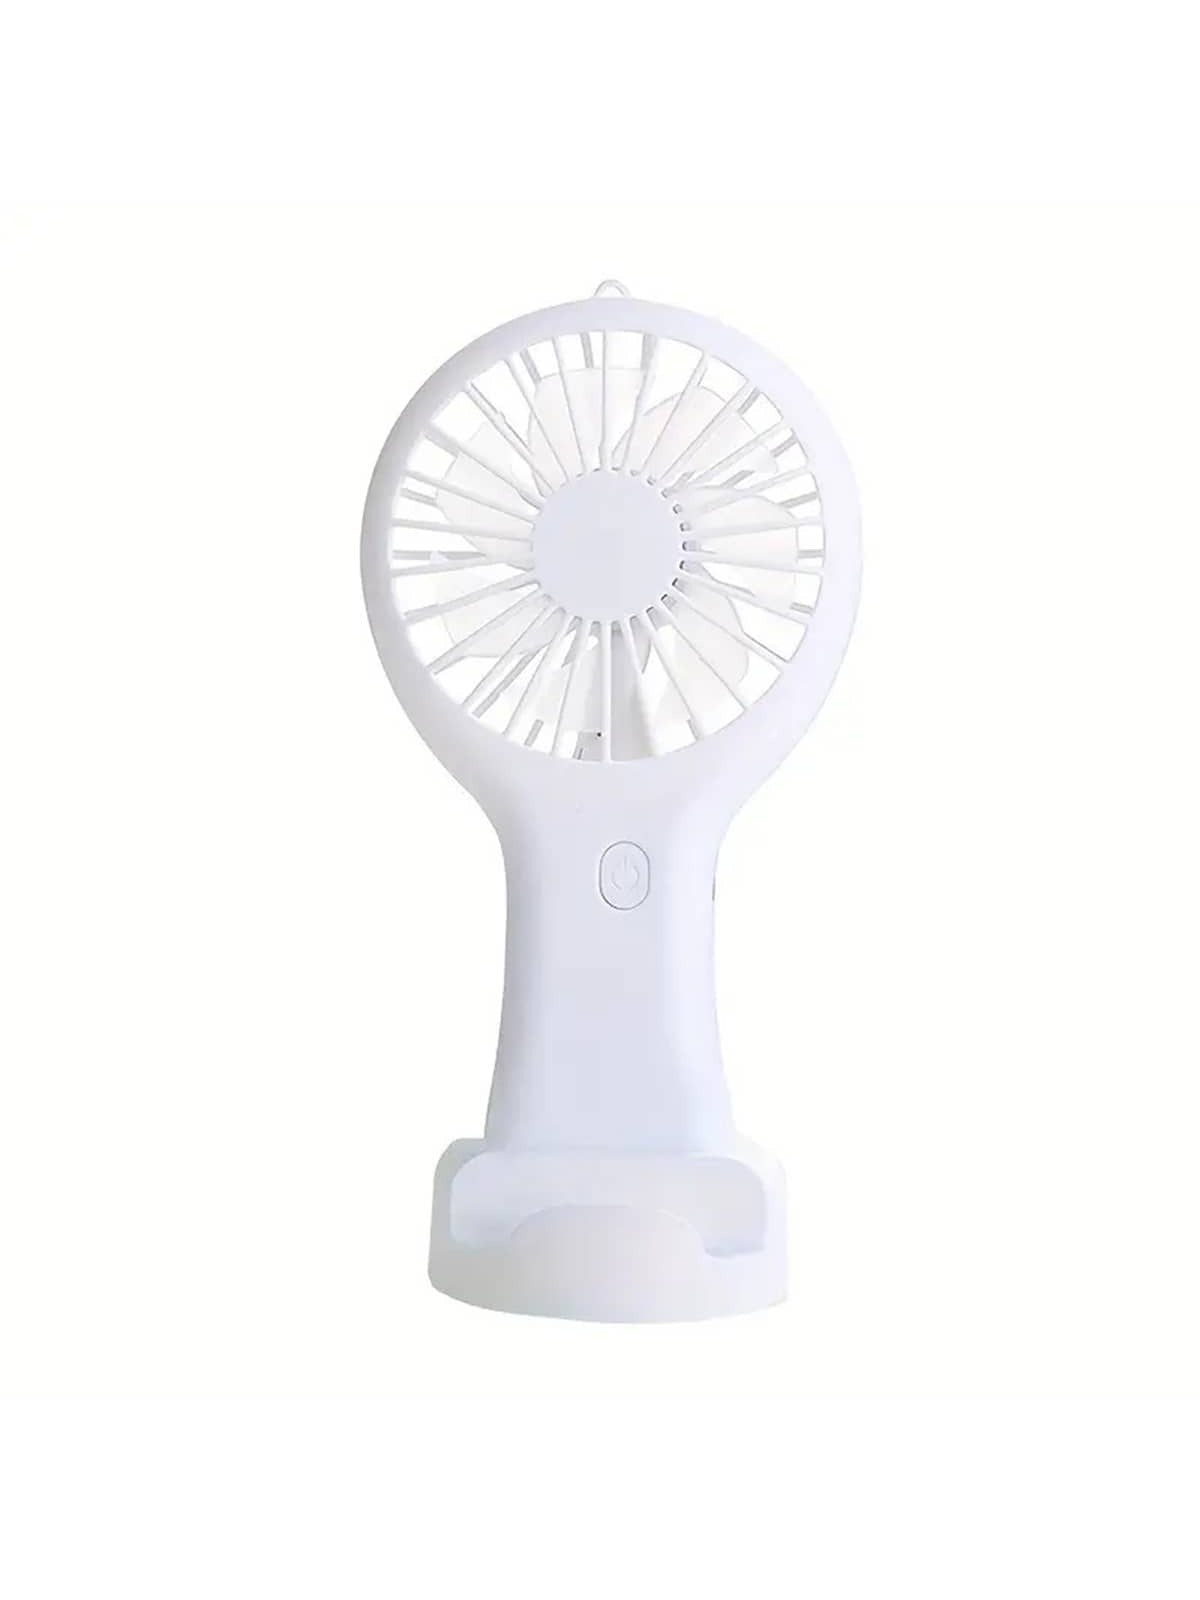 1W Portable Hand Fan Rechargeable Cooling Mini USB Fan Handheld Small Fan Cooler Office Student Gifts Mini Fan-White-1